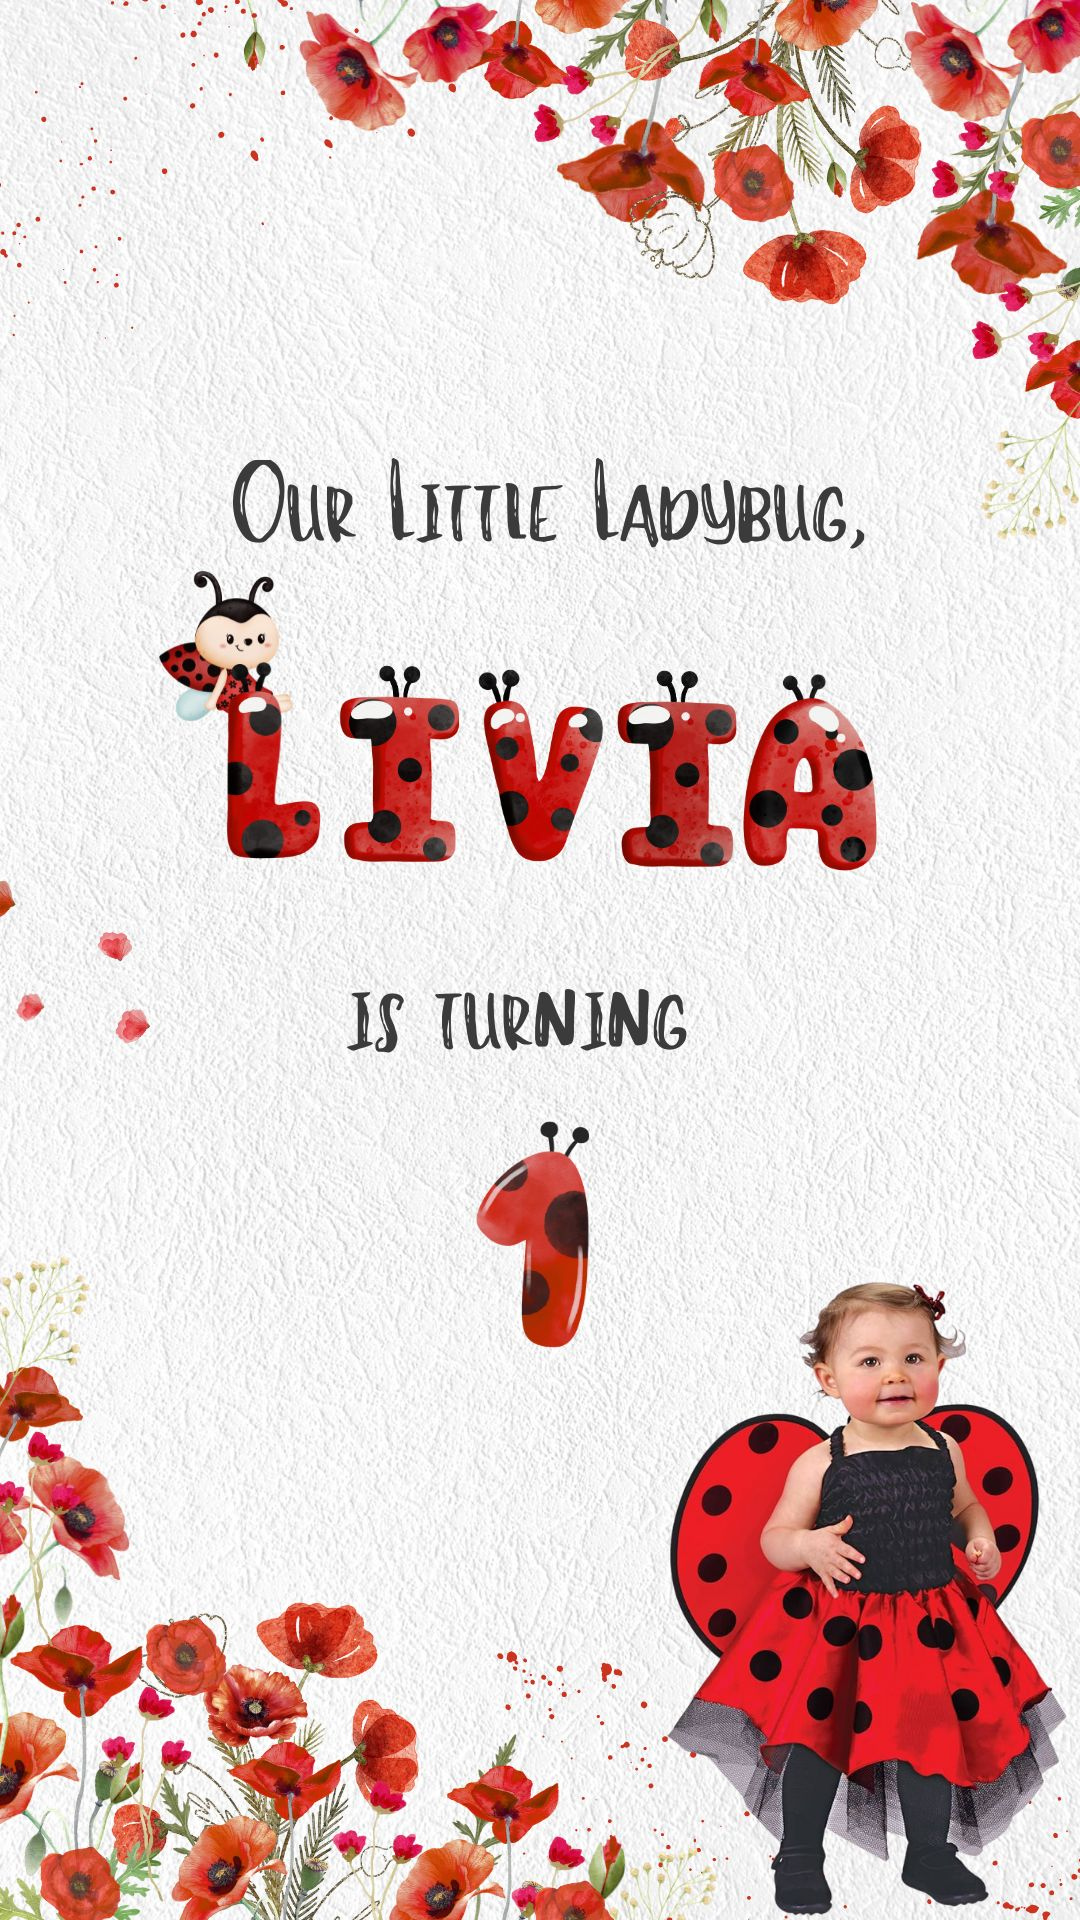 Ladybug & Poppy Seed Flowers Birthday Video Invitation - Ladybug Theme Digital Birthday Party Invite